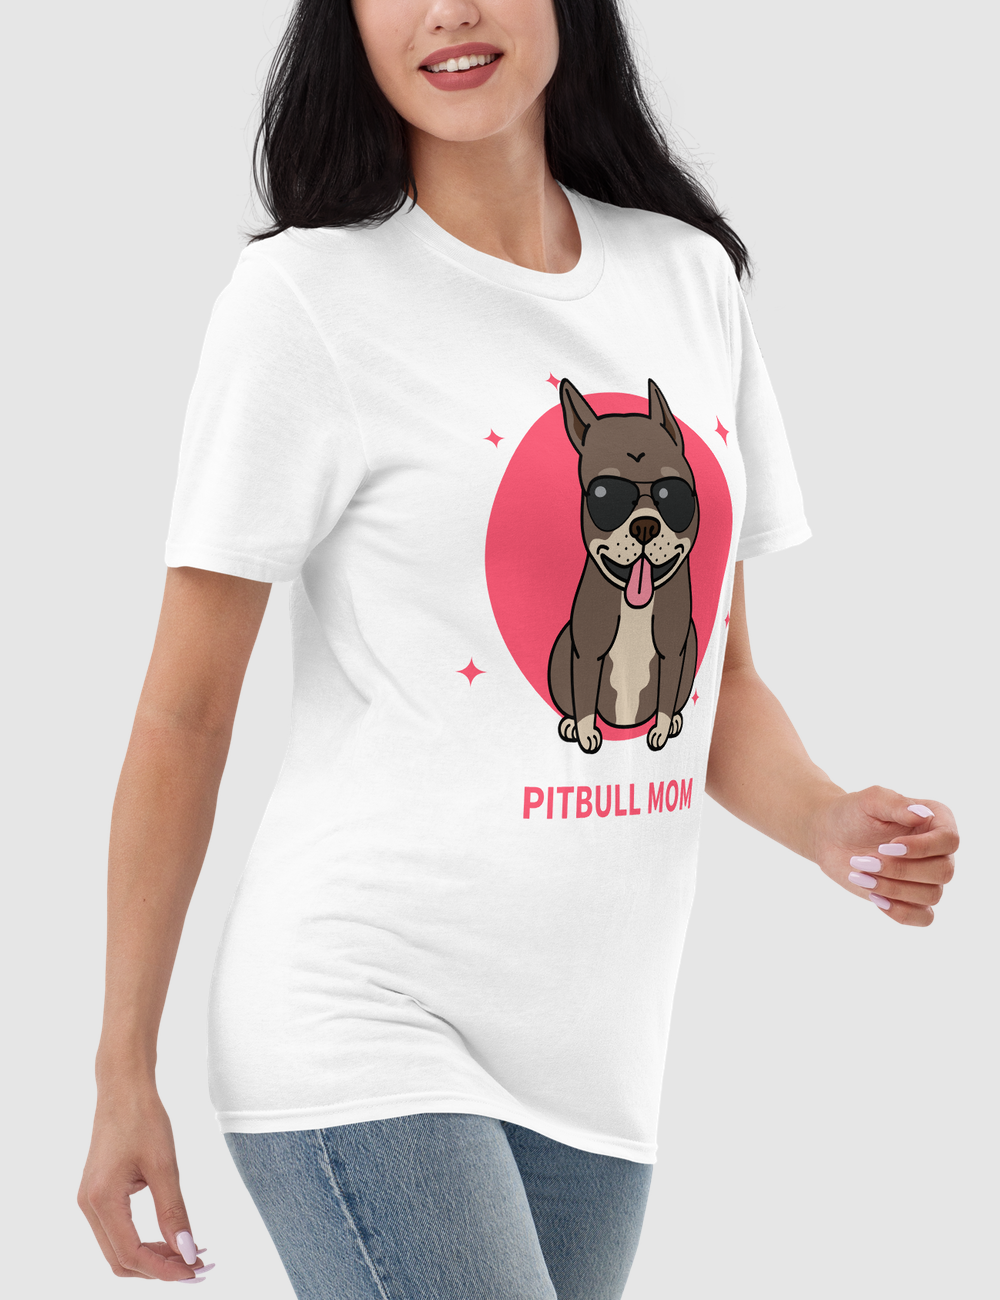 Pitbull Mom | Women's Relaxed T-Shirt OniTakai